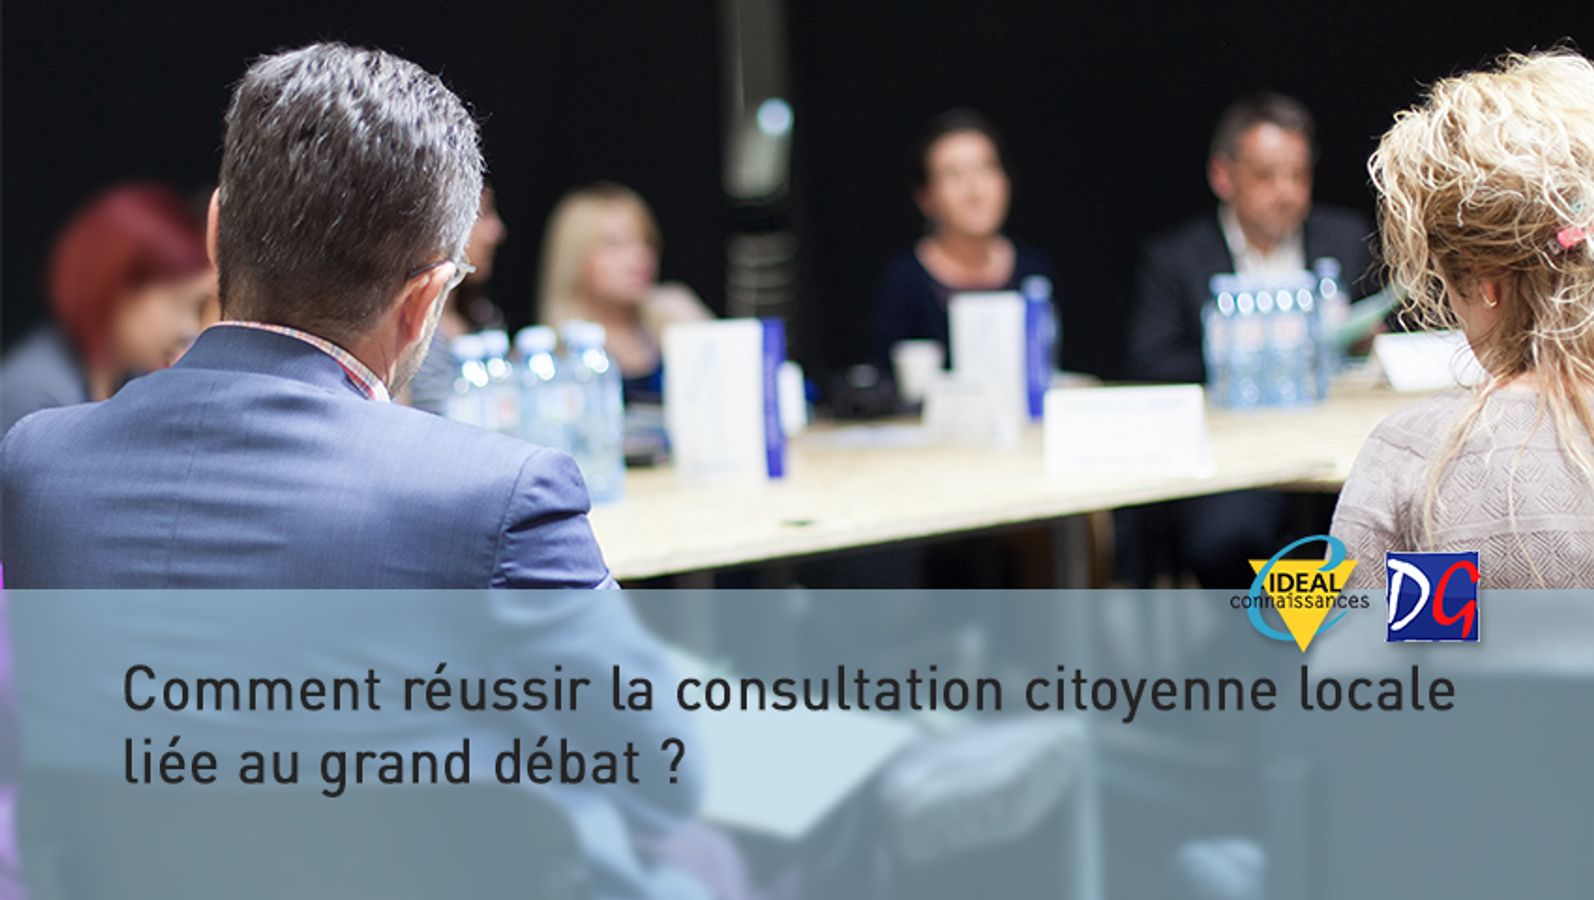  Comment réussir la consultation citoyenne locale liée au grand débat?